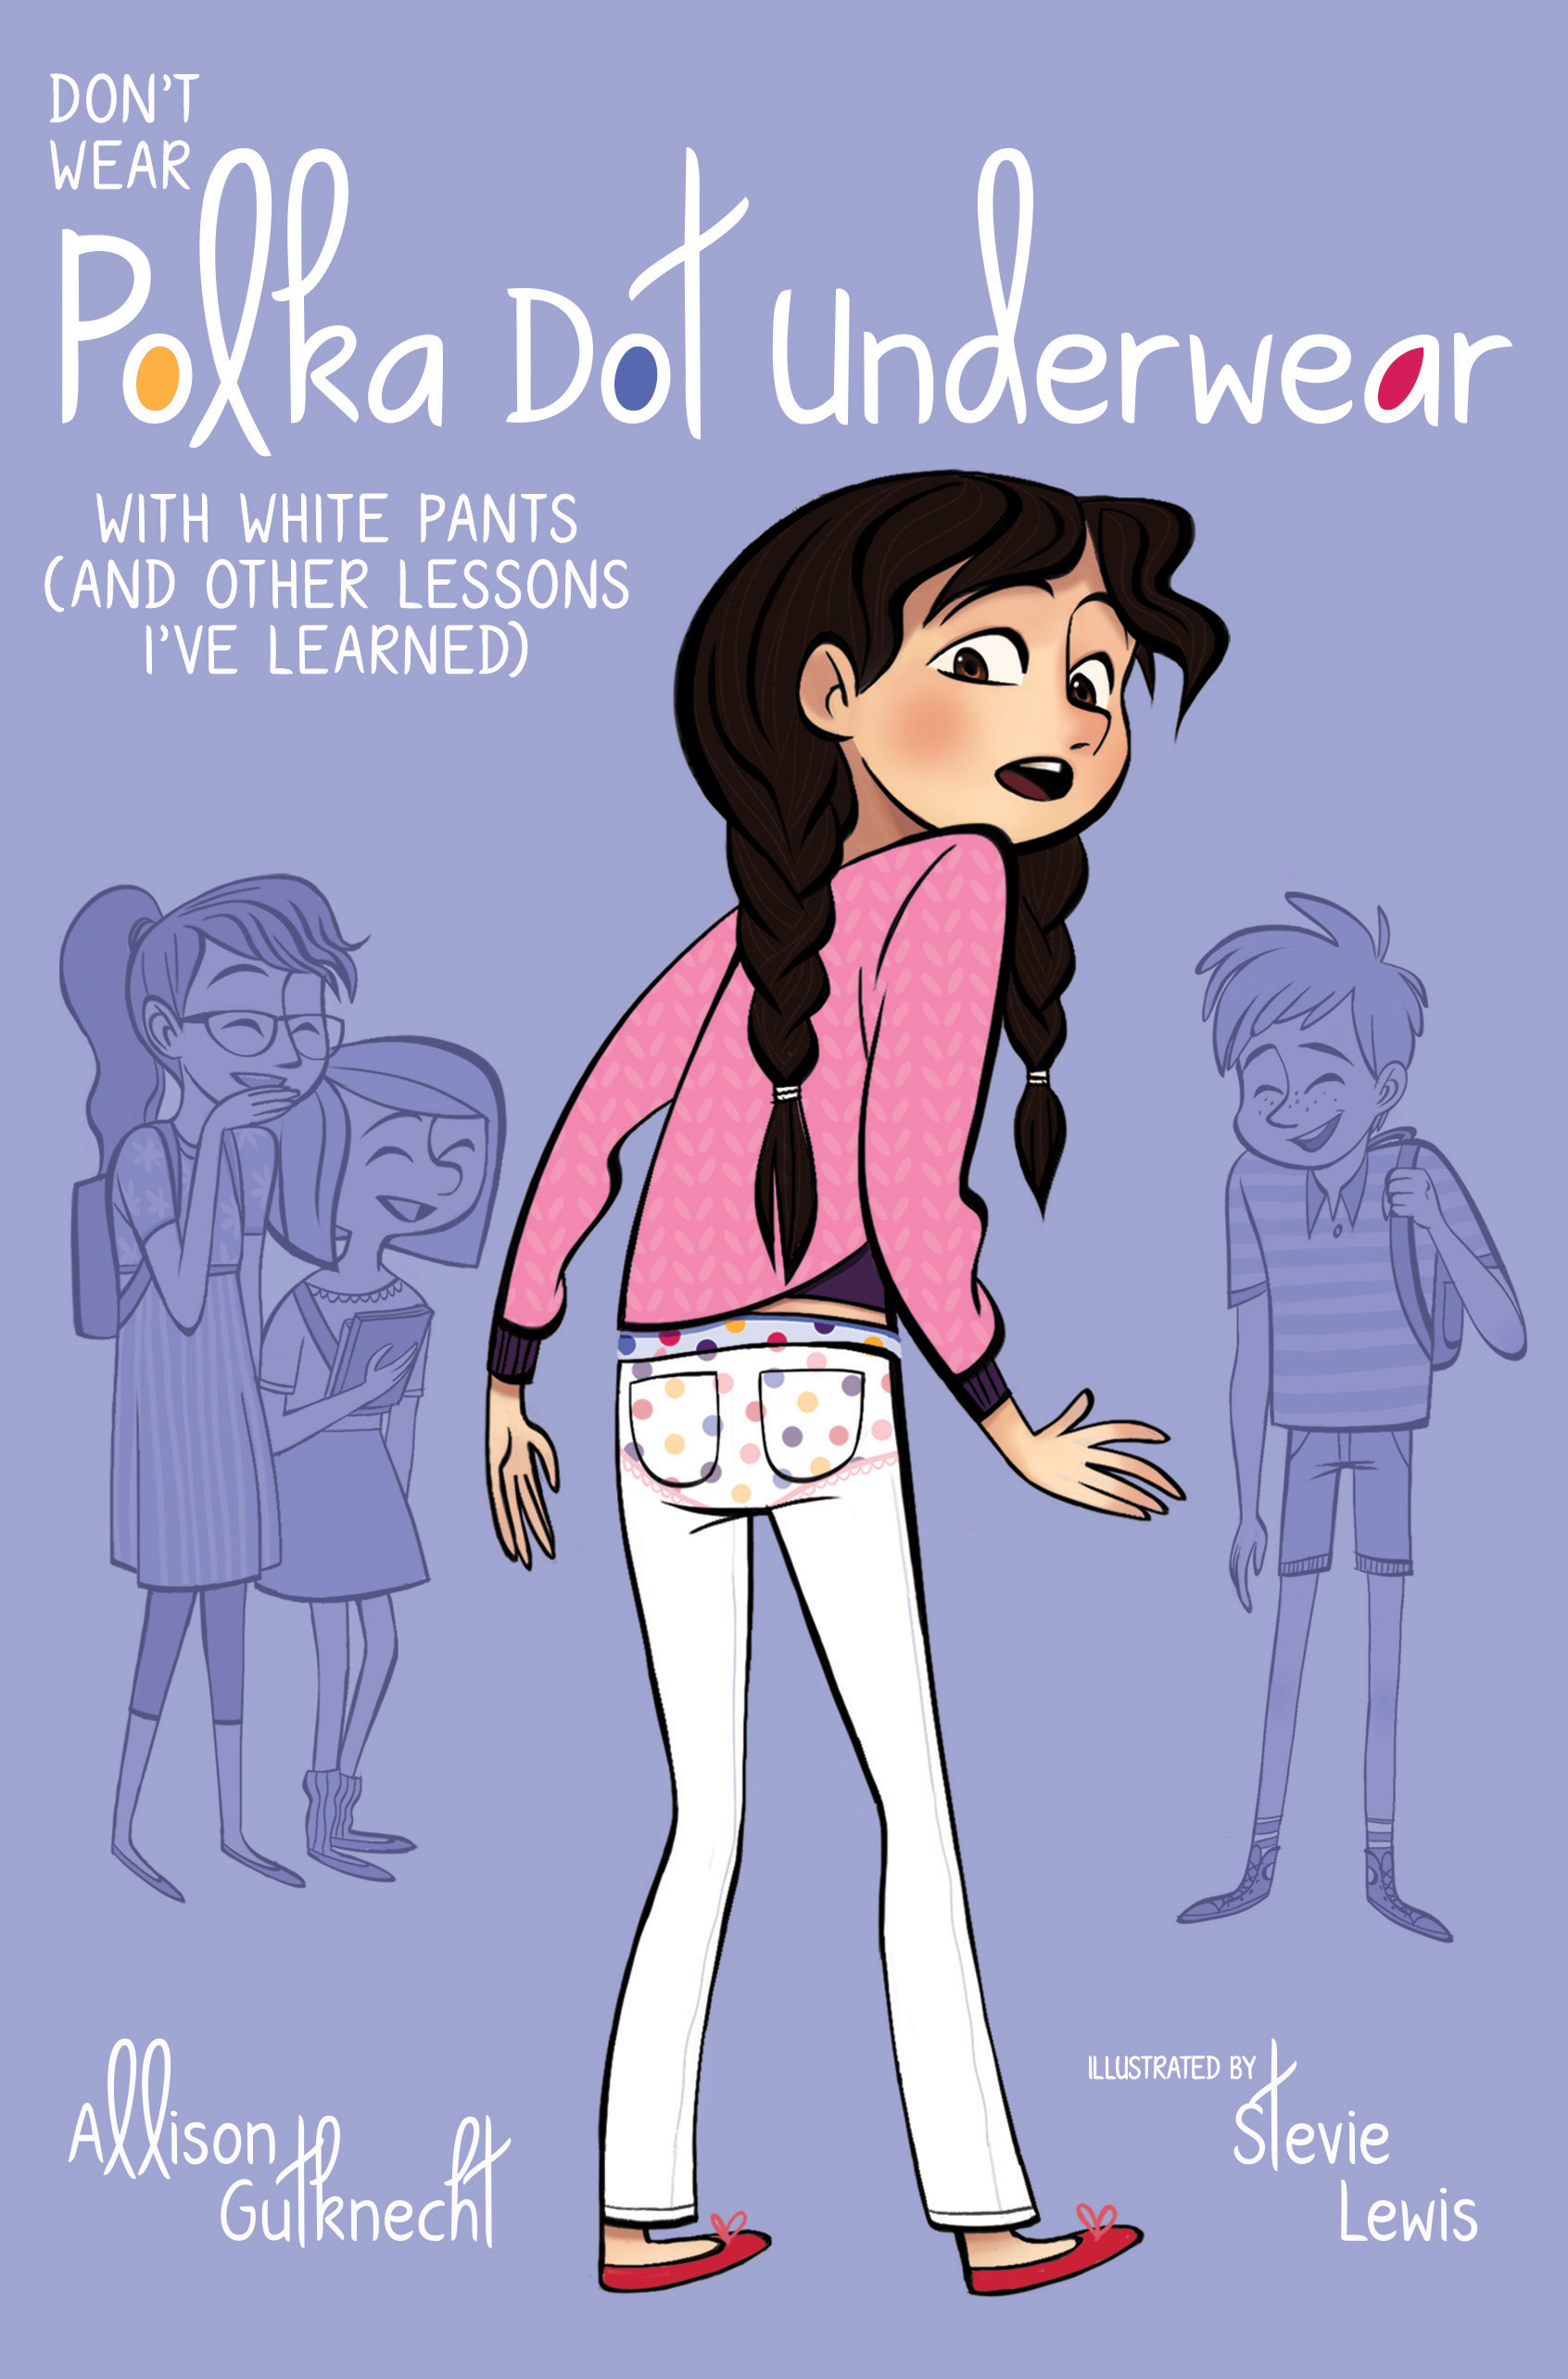 White stuff in girls underwear